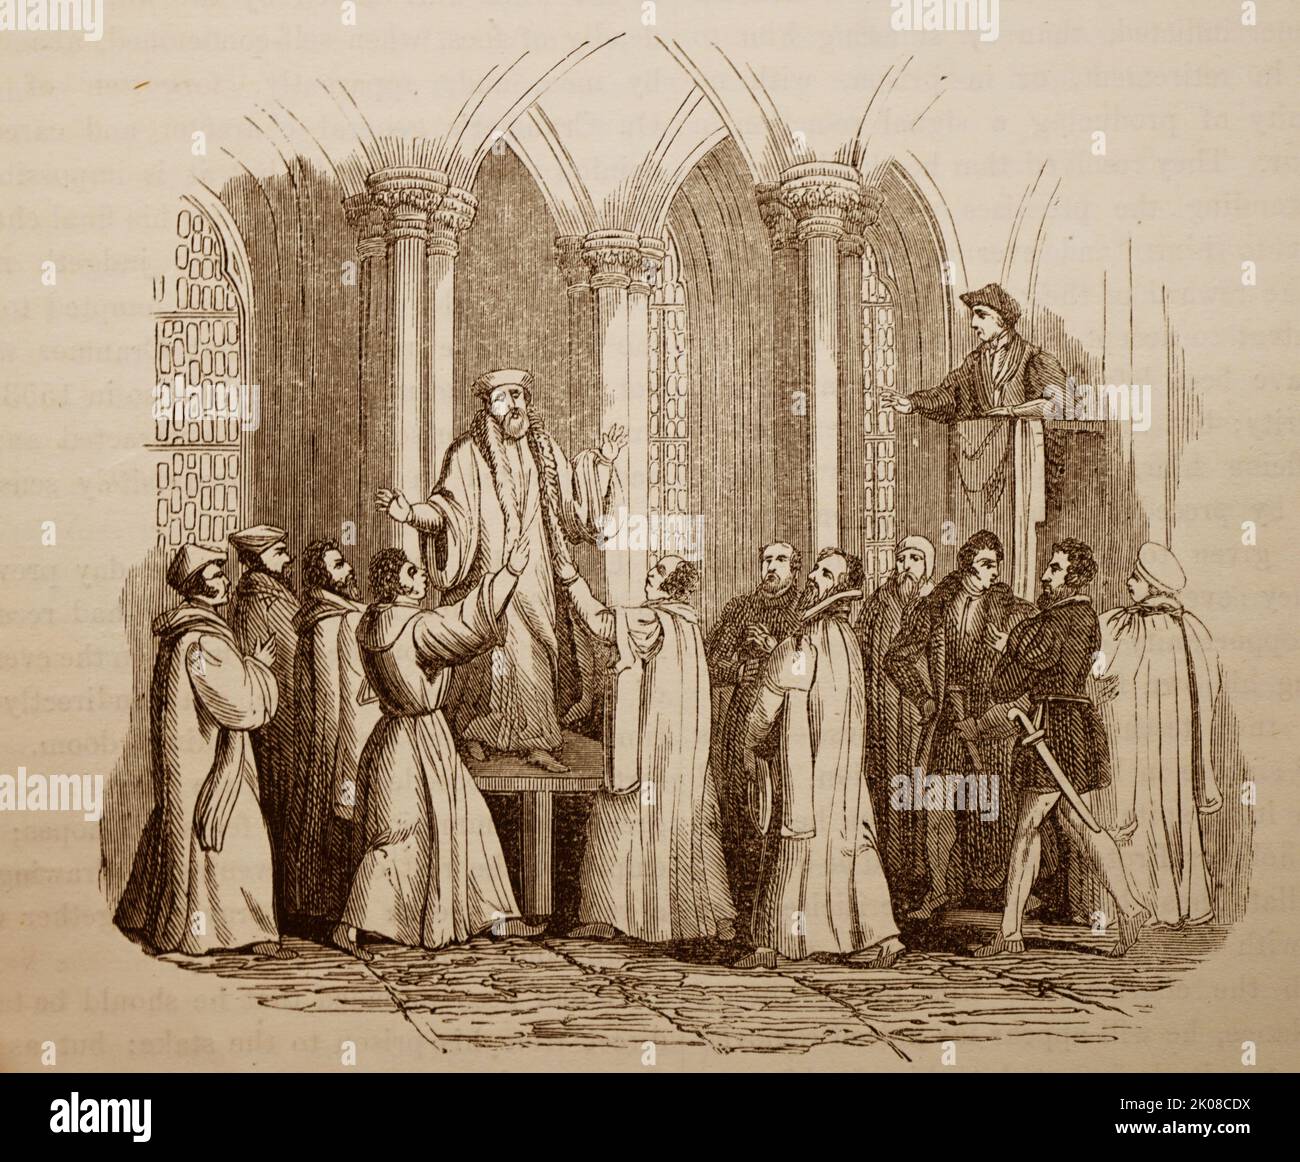 Thomas Cranmer (2. Juli 1489 - 21. März 1556) war ein Führer der englischen Reformation und Erzbischof von Canterbury während der Regierungszeit von Heinrich VIII., Edward VI. Und, für kurze Zeit, Mary I. Er half bei der Schaffung der Argumente für die Aufhebung der Ehe Heinrichs mit Katharina von Aragon, Das war einer der Gründe für die Trennung der englischen Kirche von der Vereinigung mit dem Heiligen Stuhl. Cranmer eilte 1556 zu seiner Hinrichtung Stockfoto